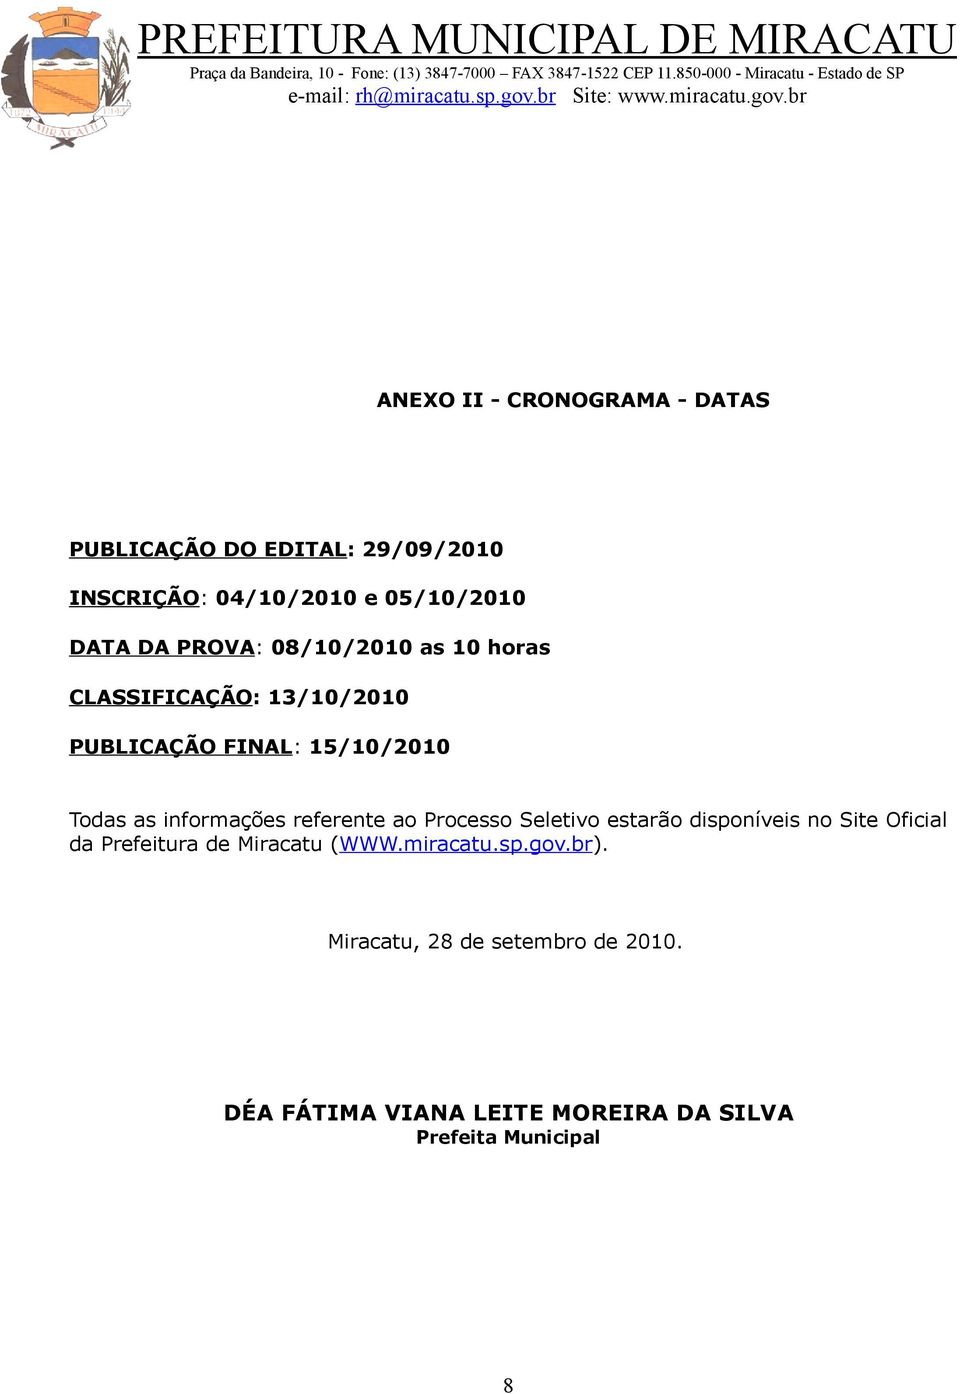 referente ao Processo Seletivo estarão disponíveis no Site Oficial da Prefeitura de Miracatu (WWW.miracatu.